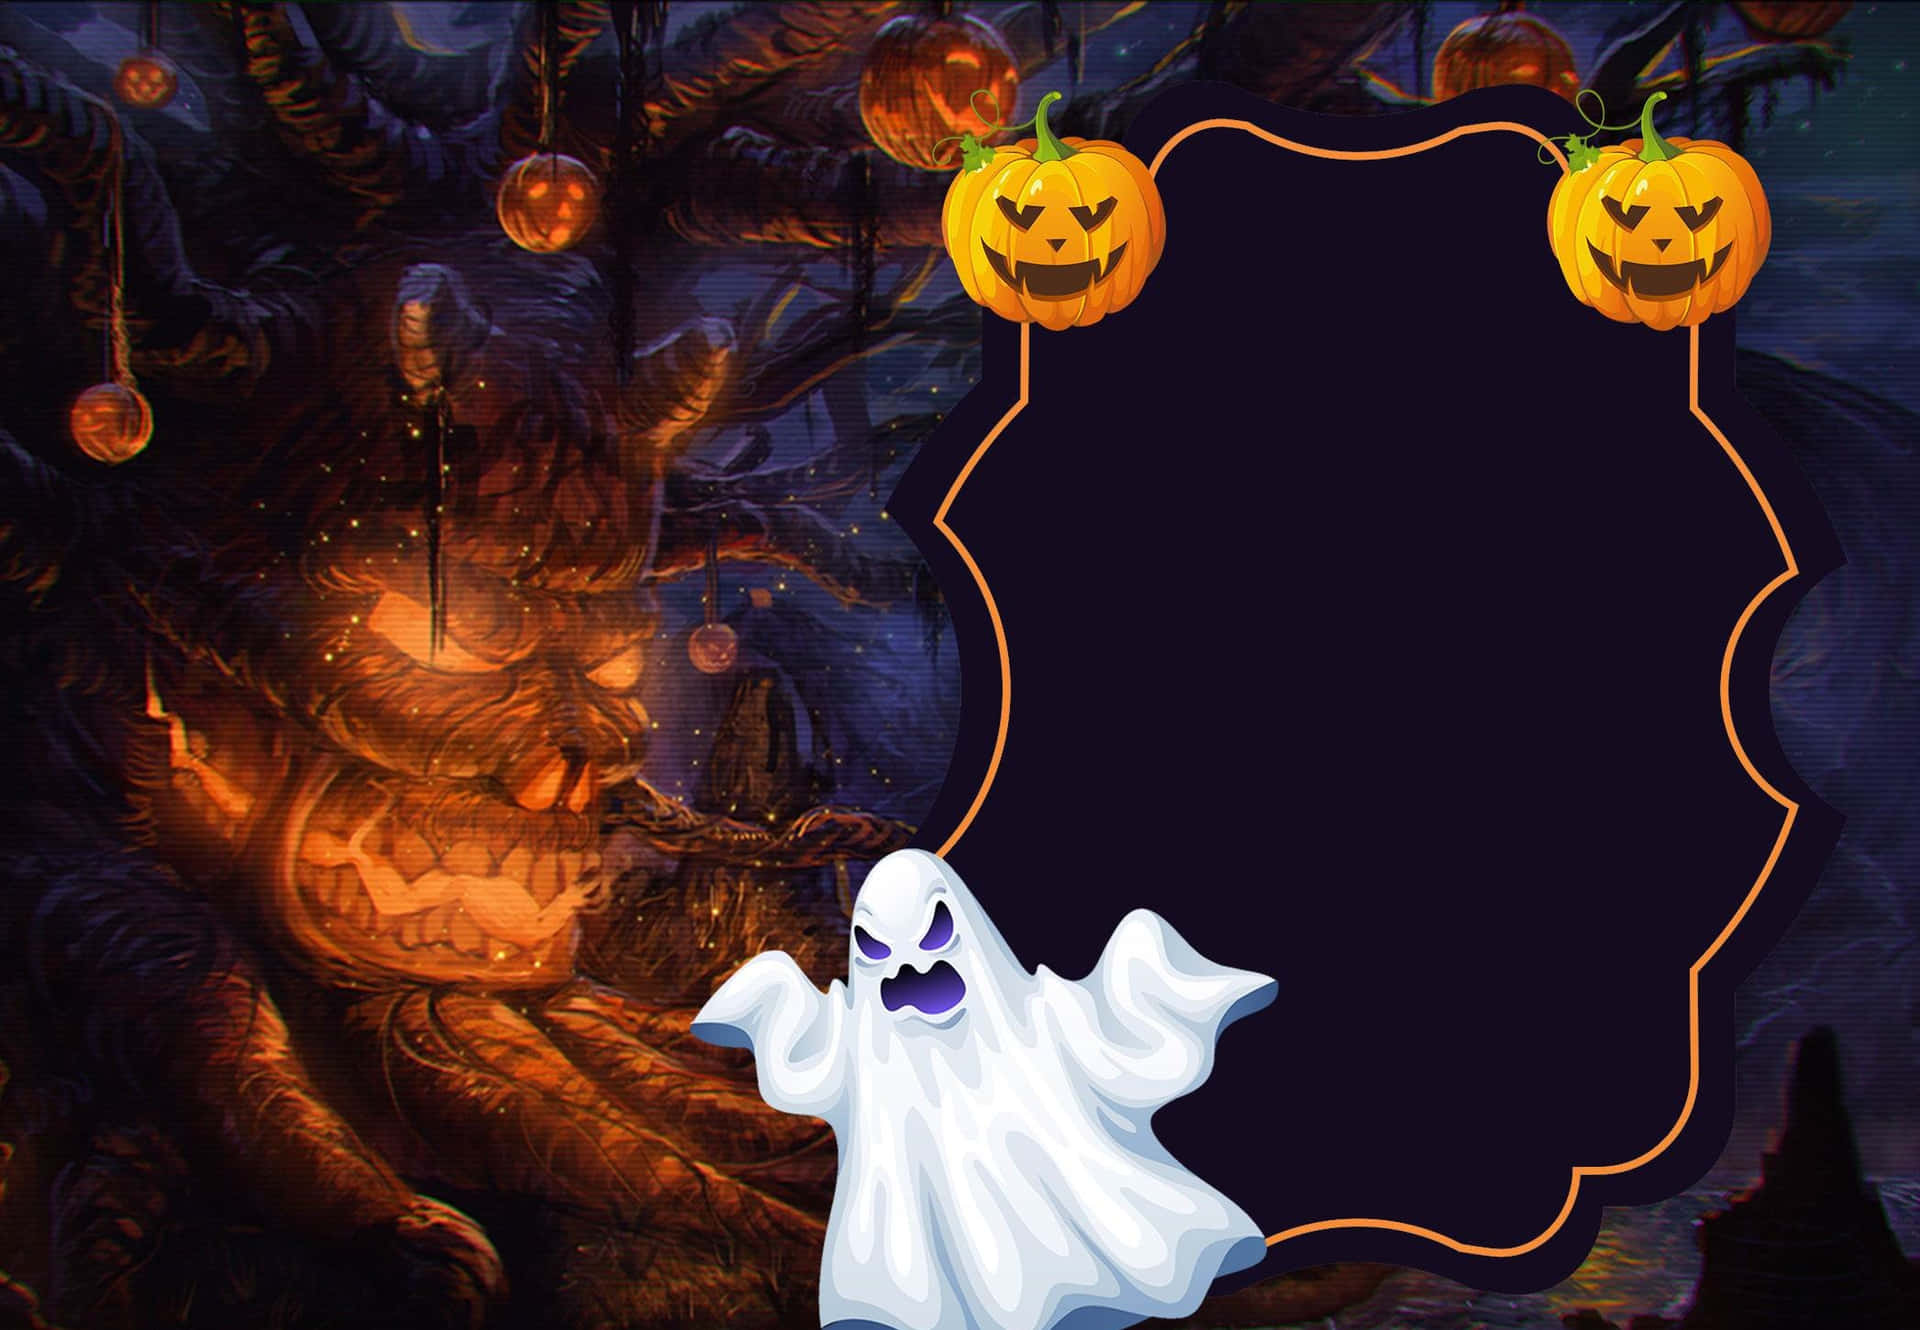 Get ready for an Aesthetic Creepy Halloween